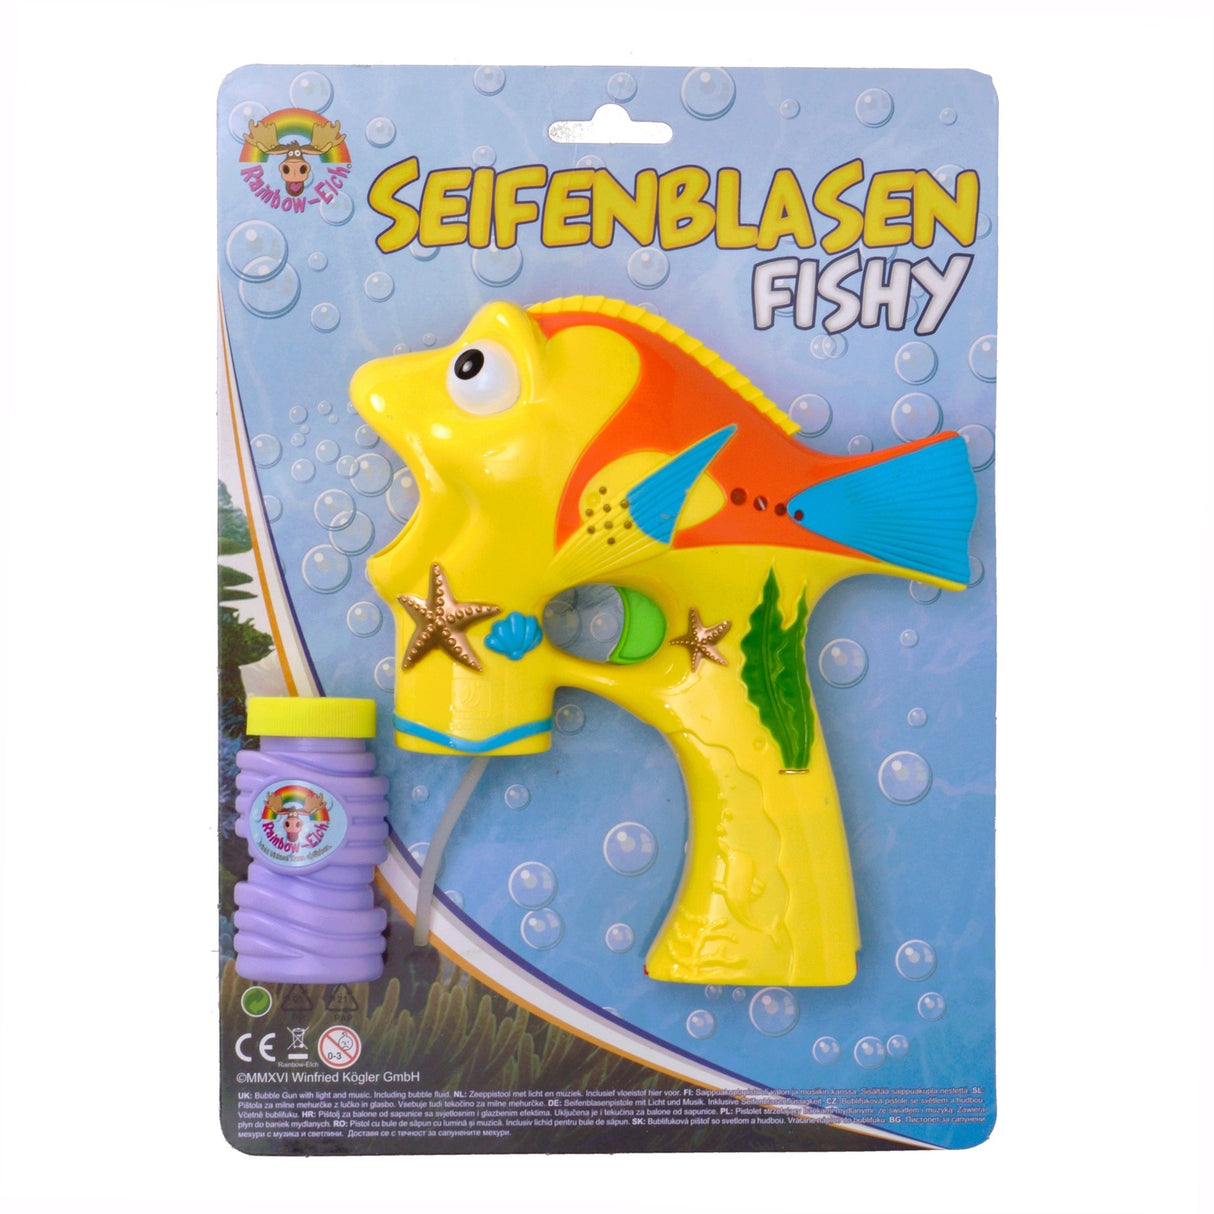 Fisch Seifenblasenpistole in gelb mit Licht und Sound